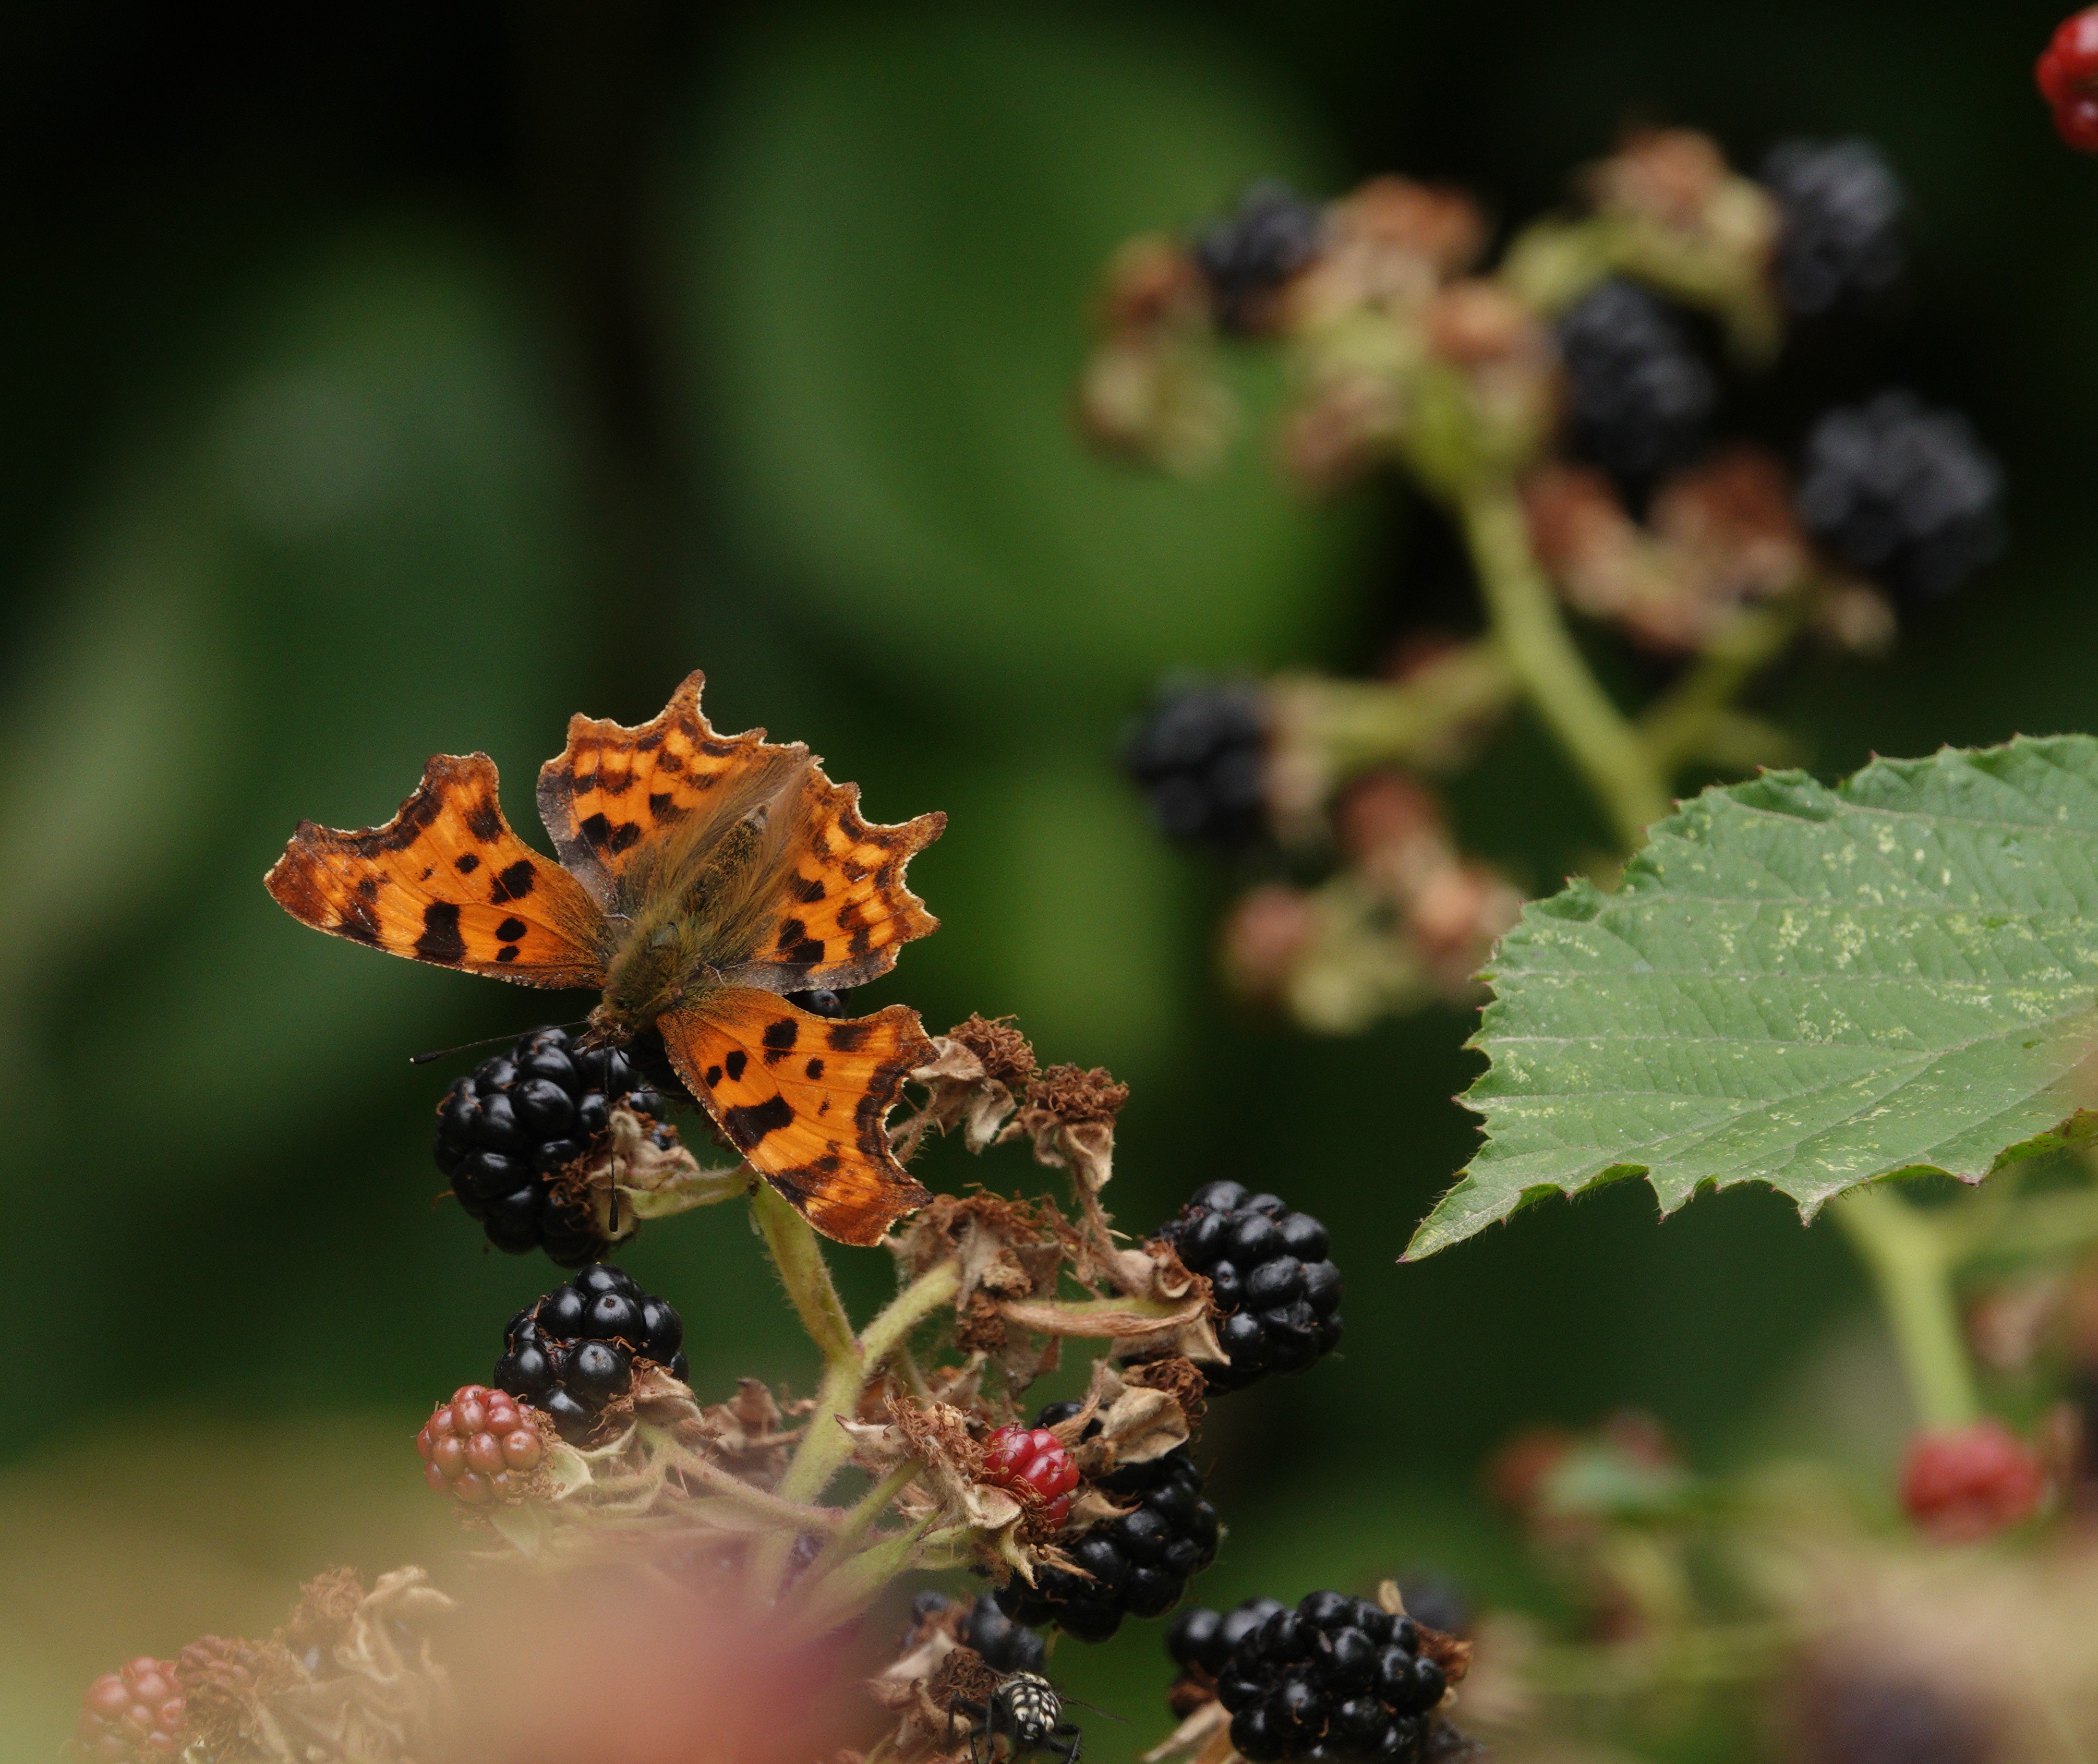 Comma feeding from blackberries